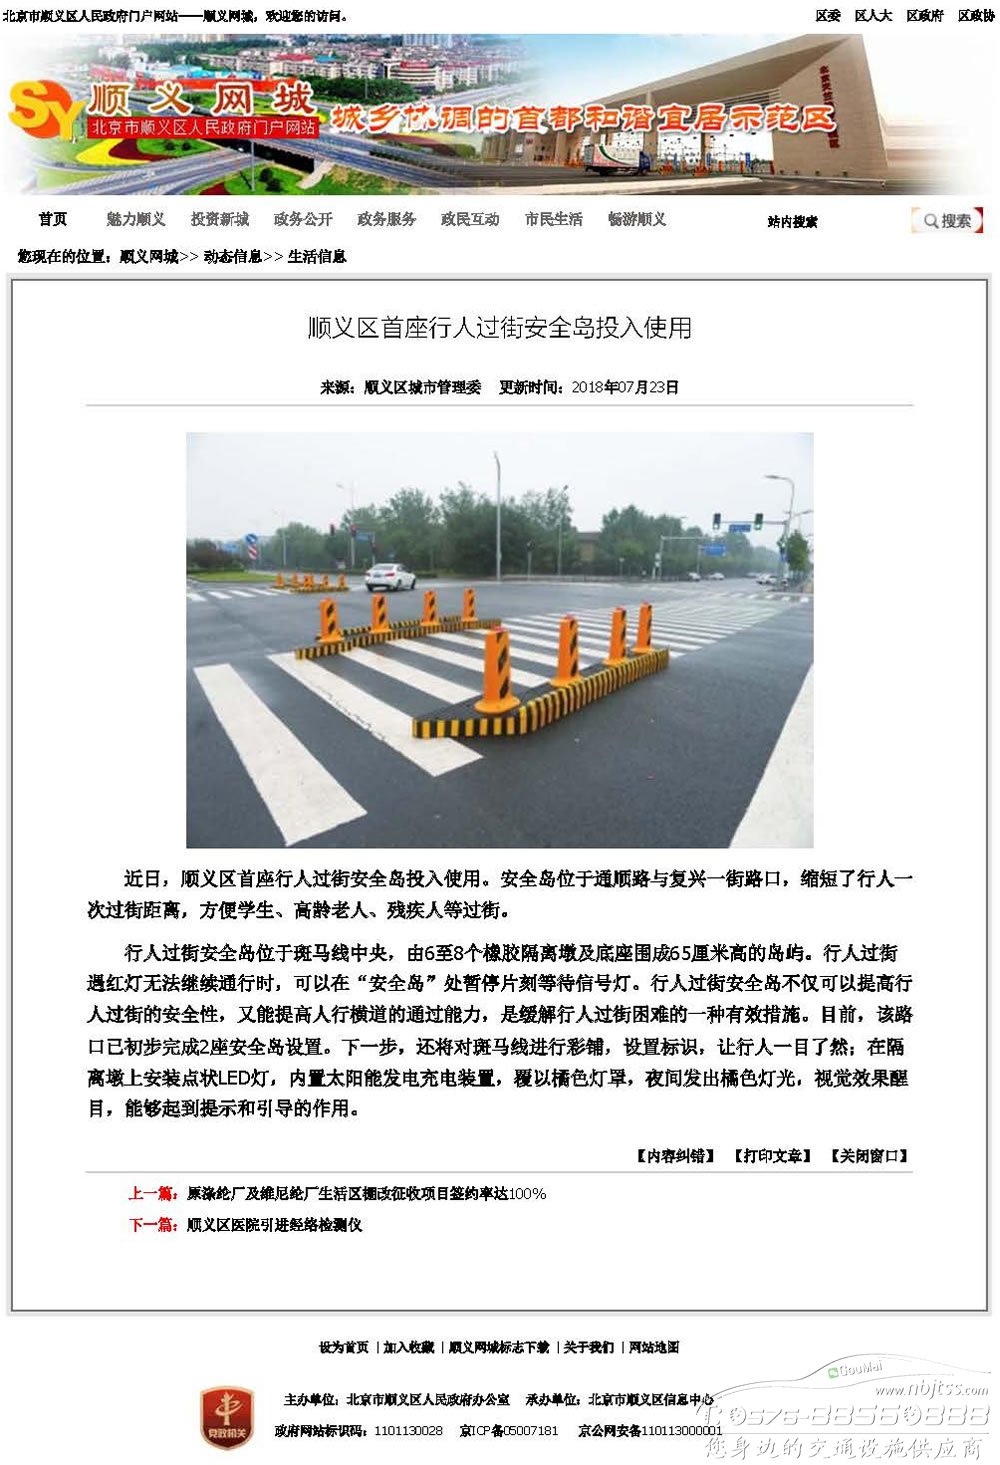 本厂橡胶行人过街安全岛产品报道在北京顺义政府网